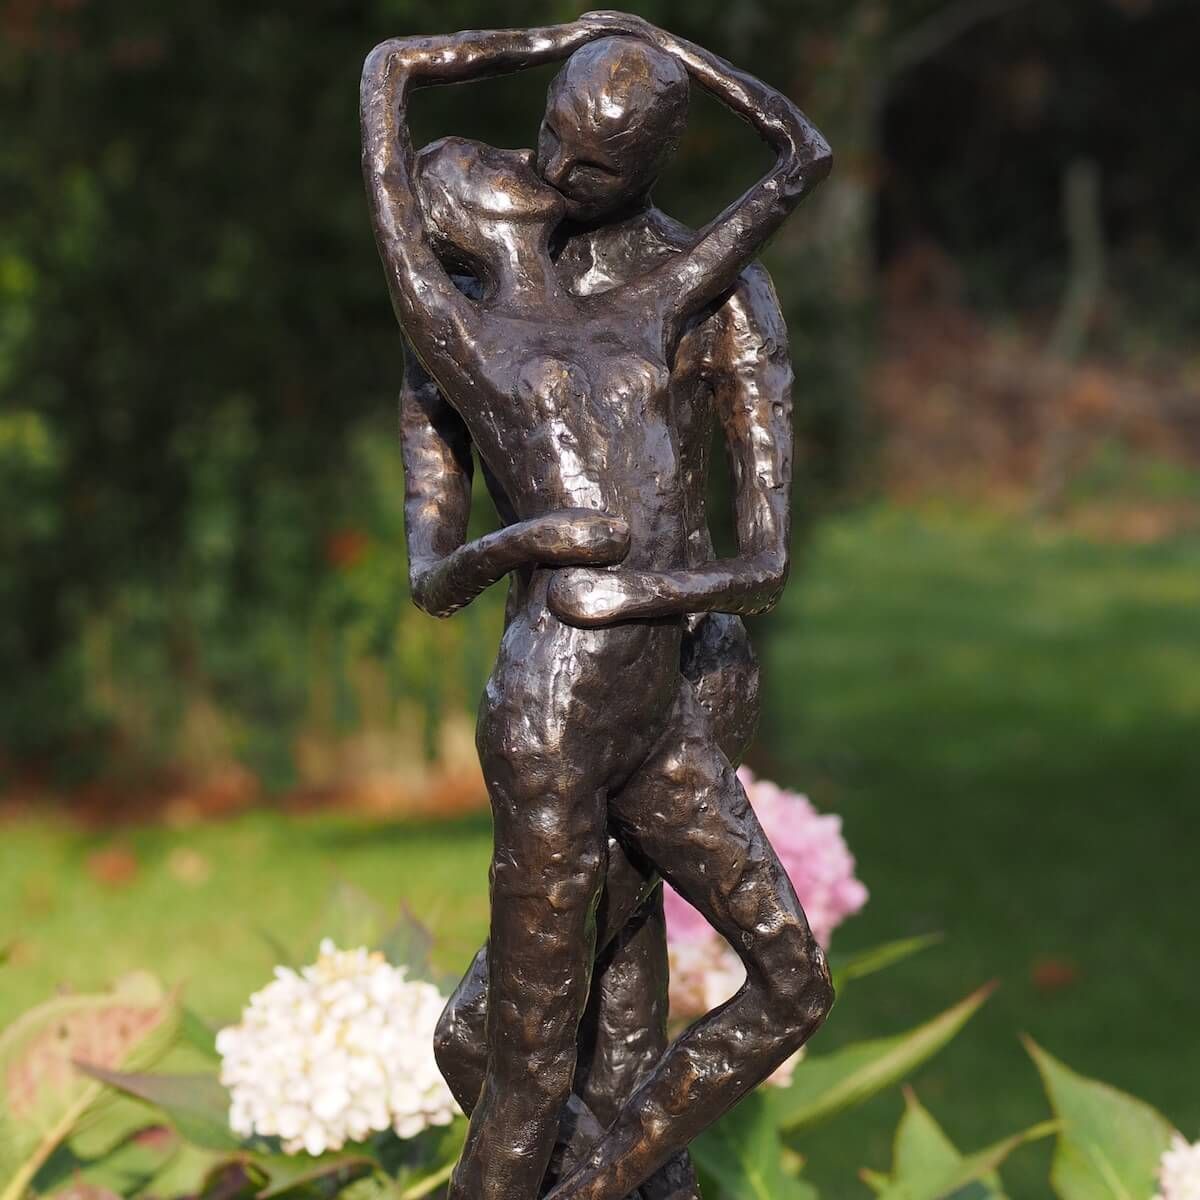 19cm weiss-silber 720146 Skulptur Liebespaar sitzend